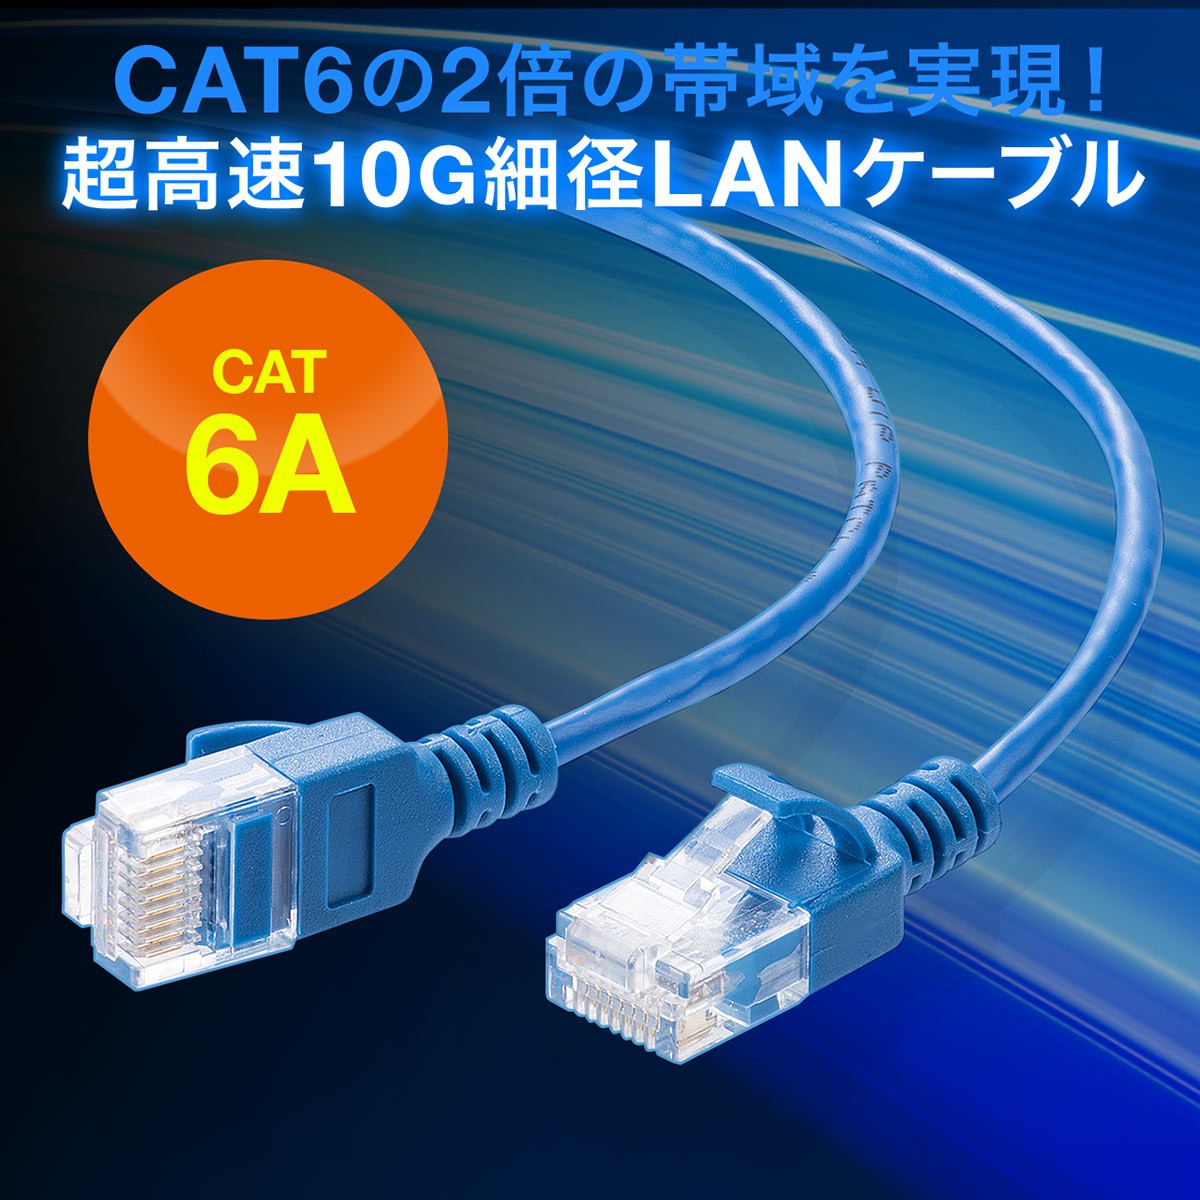 LANケーブル CAT6A 5m カテゴリ6A カテ6A ランケーブル 通信ケーブル 超高速 10G 爪折れ防止 カバー付き 細径 柔らかい 曲げやすい より線 ストレート 全結線